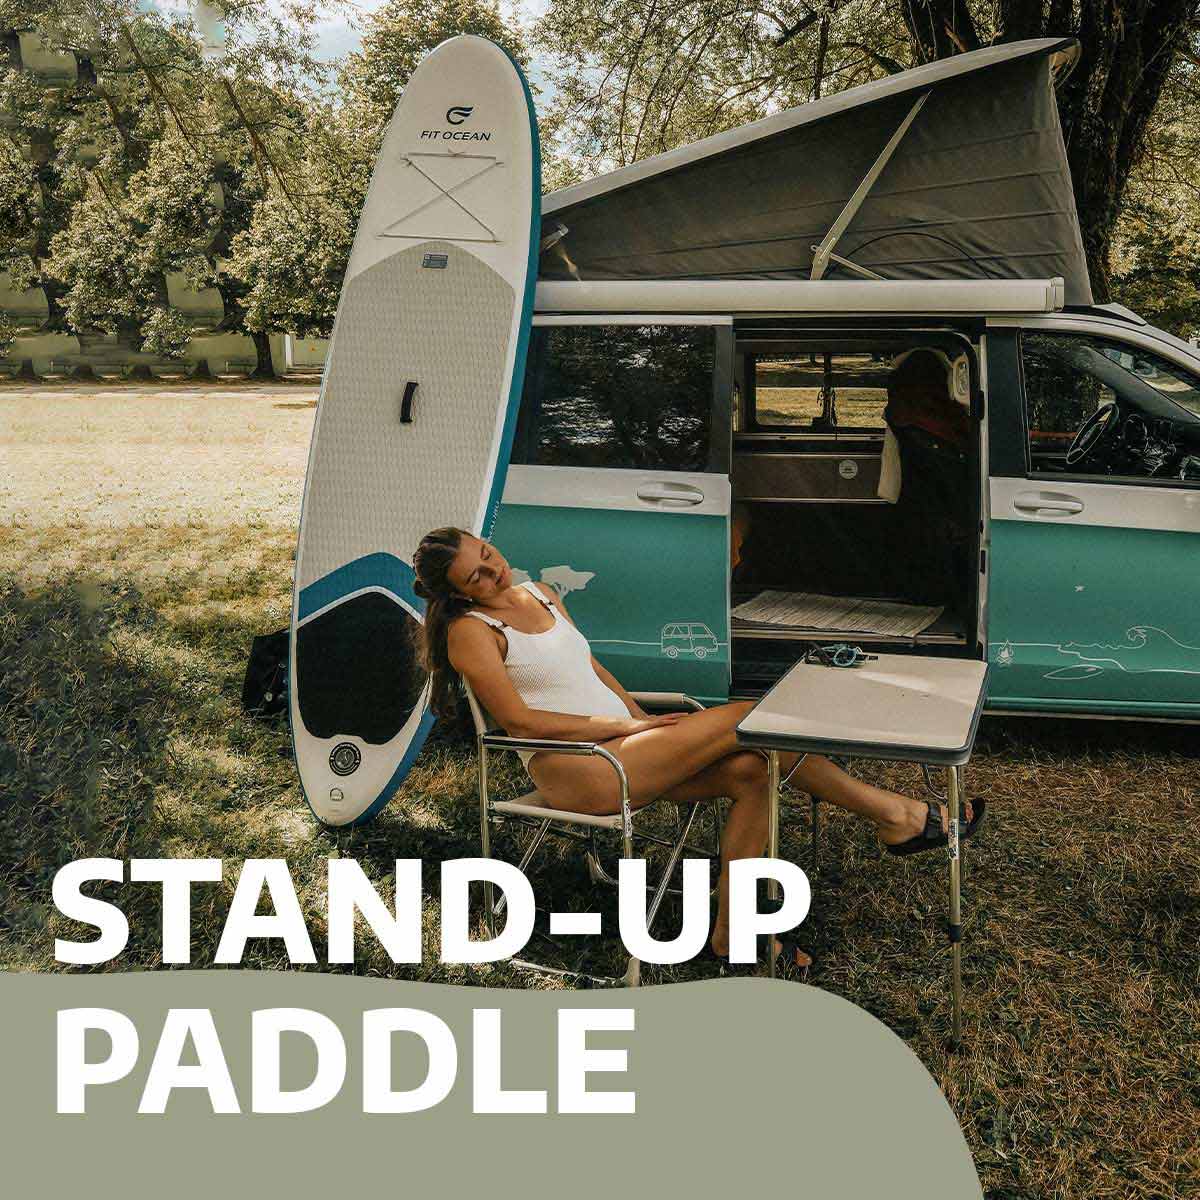 Van aménagé turquoise paddle et fille avec stand up paddle